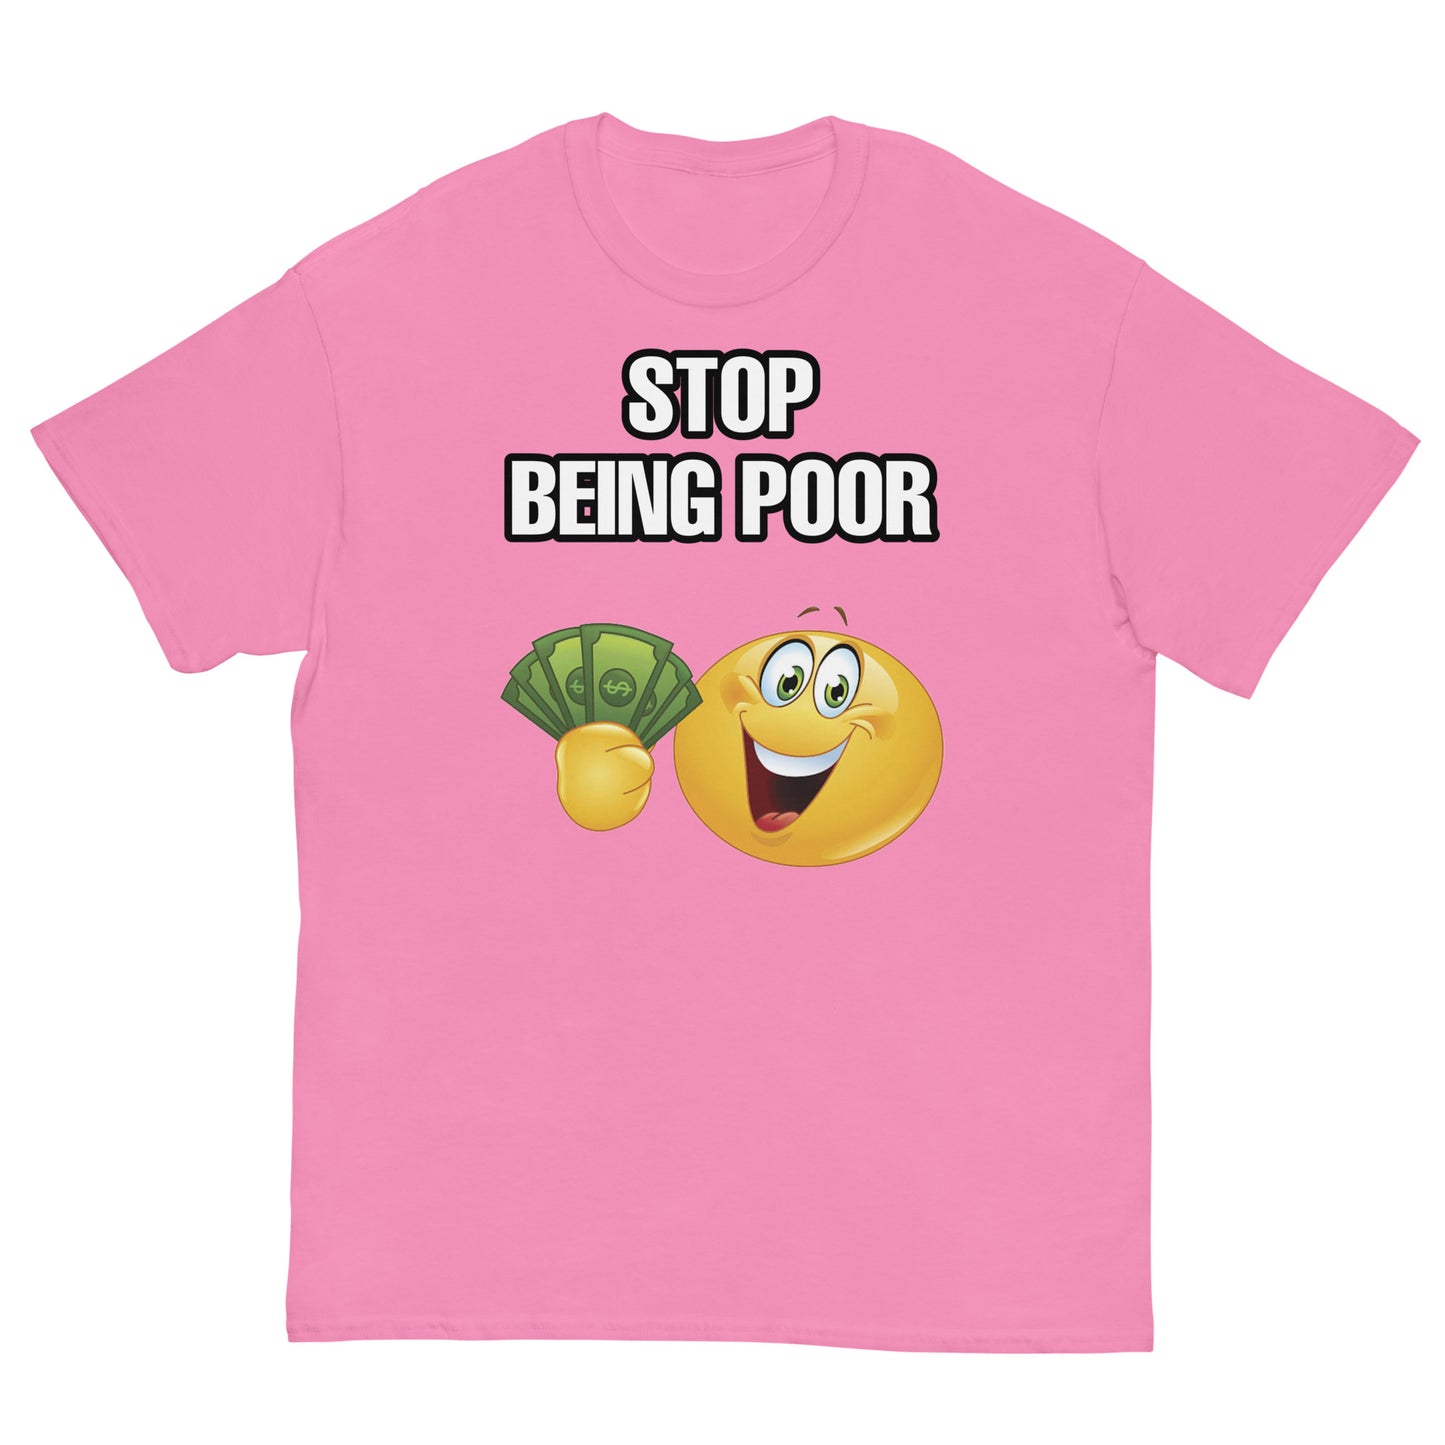 Stop Being Poor Cringey Tee